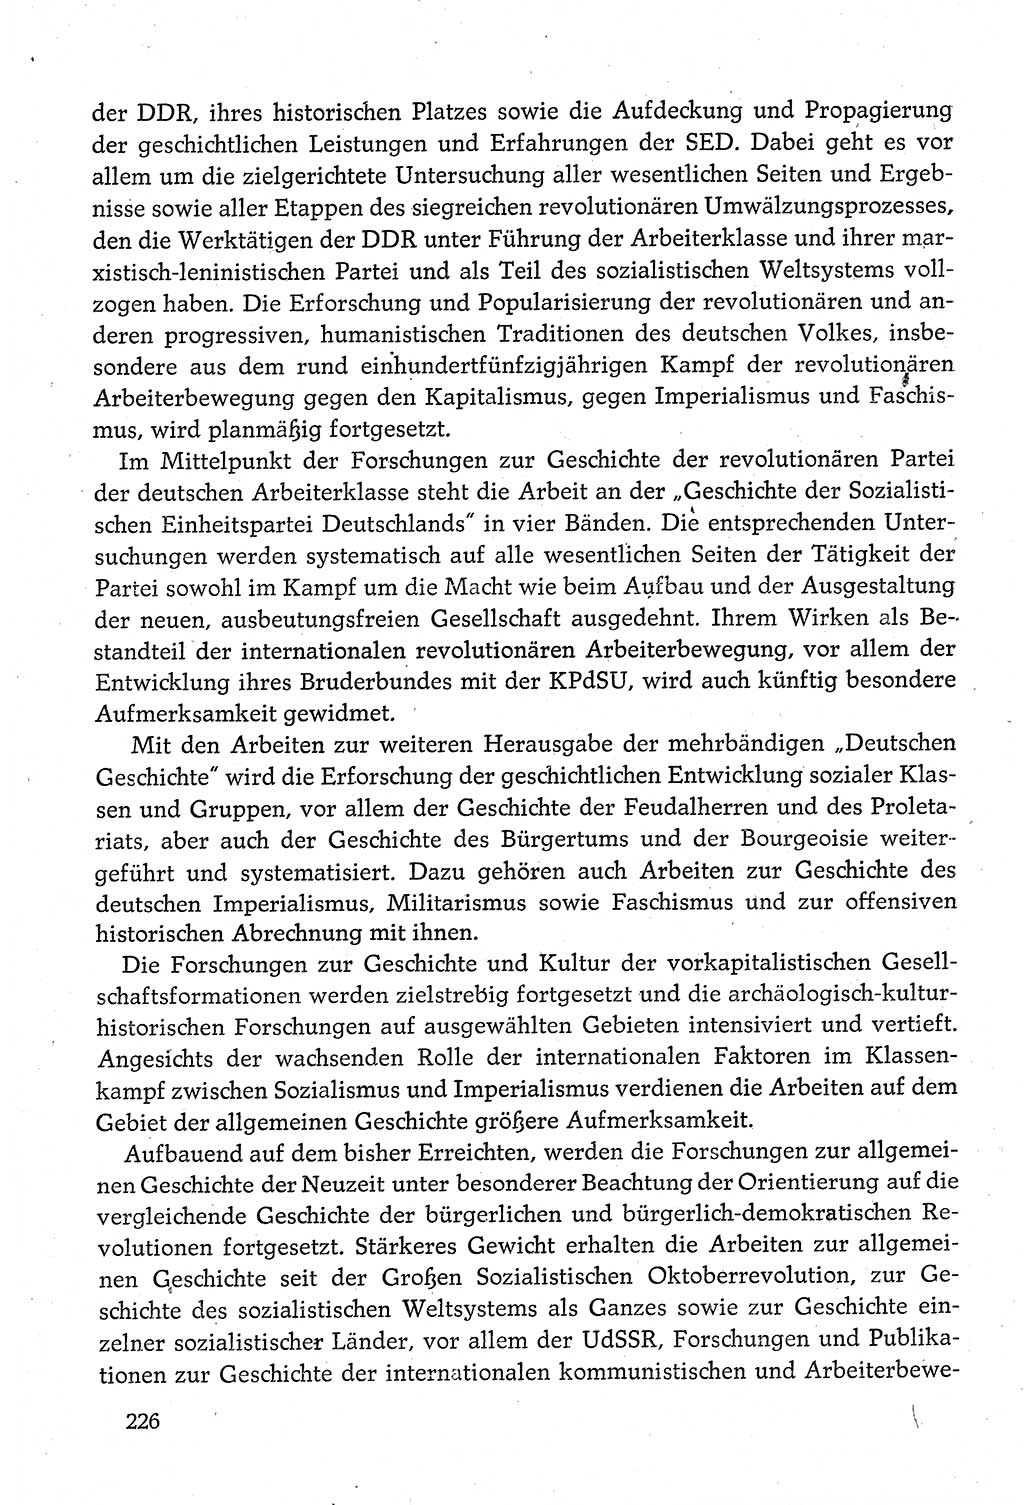 Dokumente der Sozialistischen Einheitspartei Deutschlands (SED) [Deutsche Demokratische Republik (DDR)] 1980-1981, Seite 226 (Dok. SED DDR 1980-1981, S. 226)